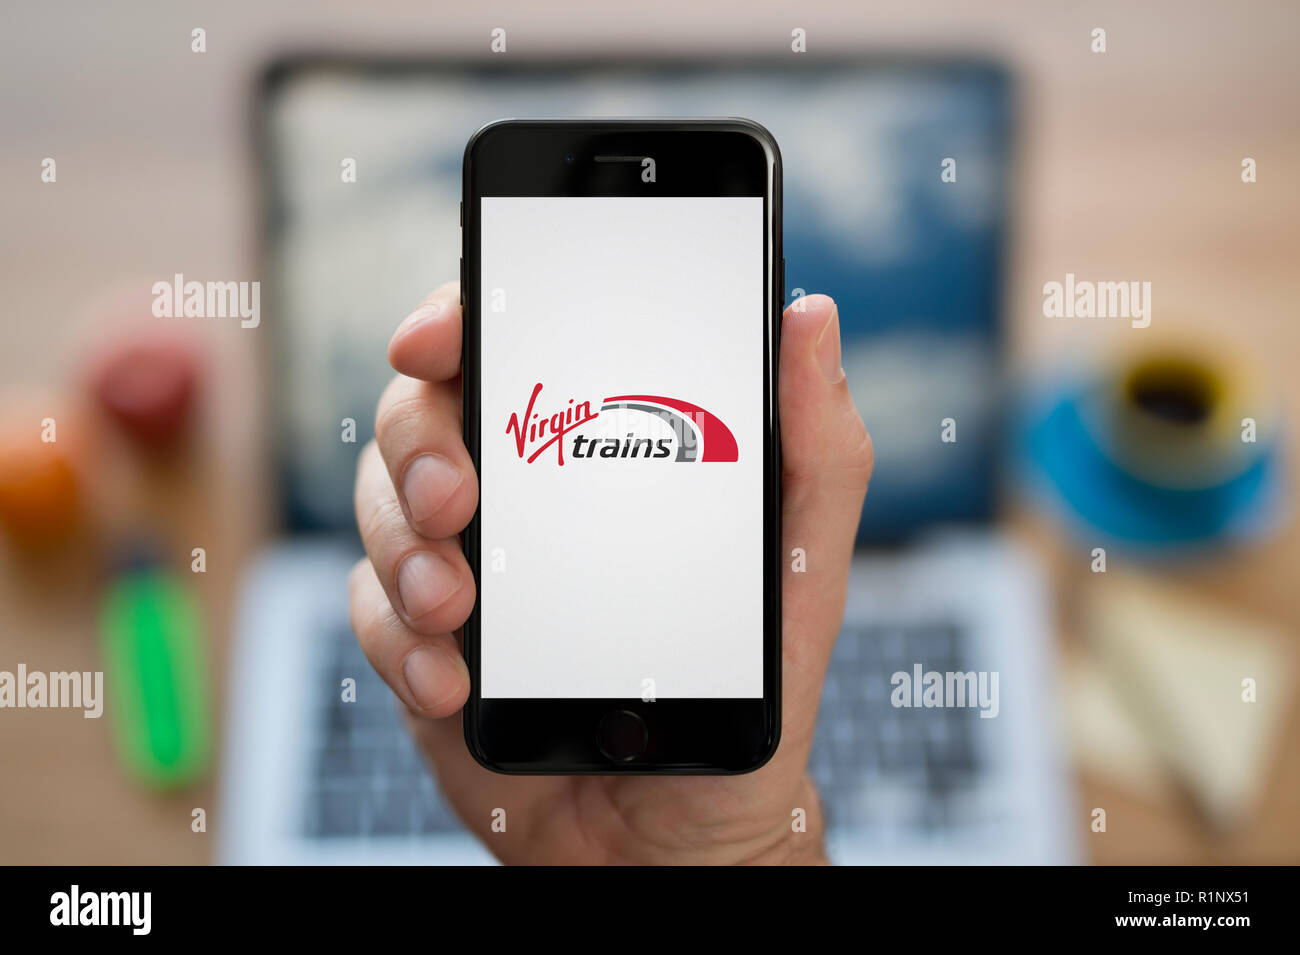 Un uomo guarda al suo iPhone che visualizza la Virgin Trains logo, mentre se ne sta seduto alla sua scrivania per computer (solo uso editoriale). Foto Stock